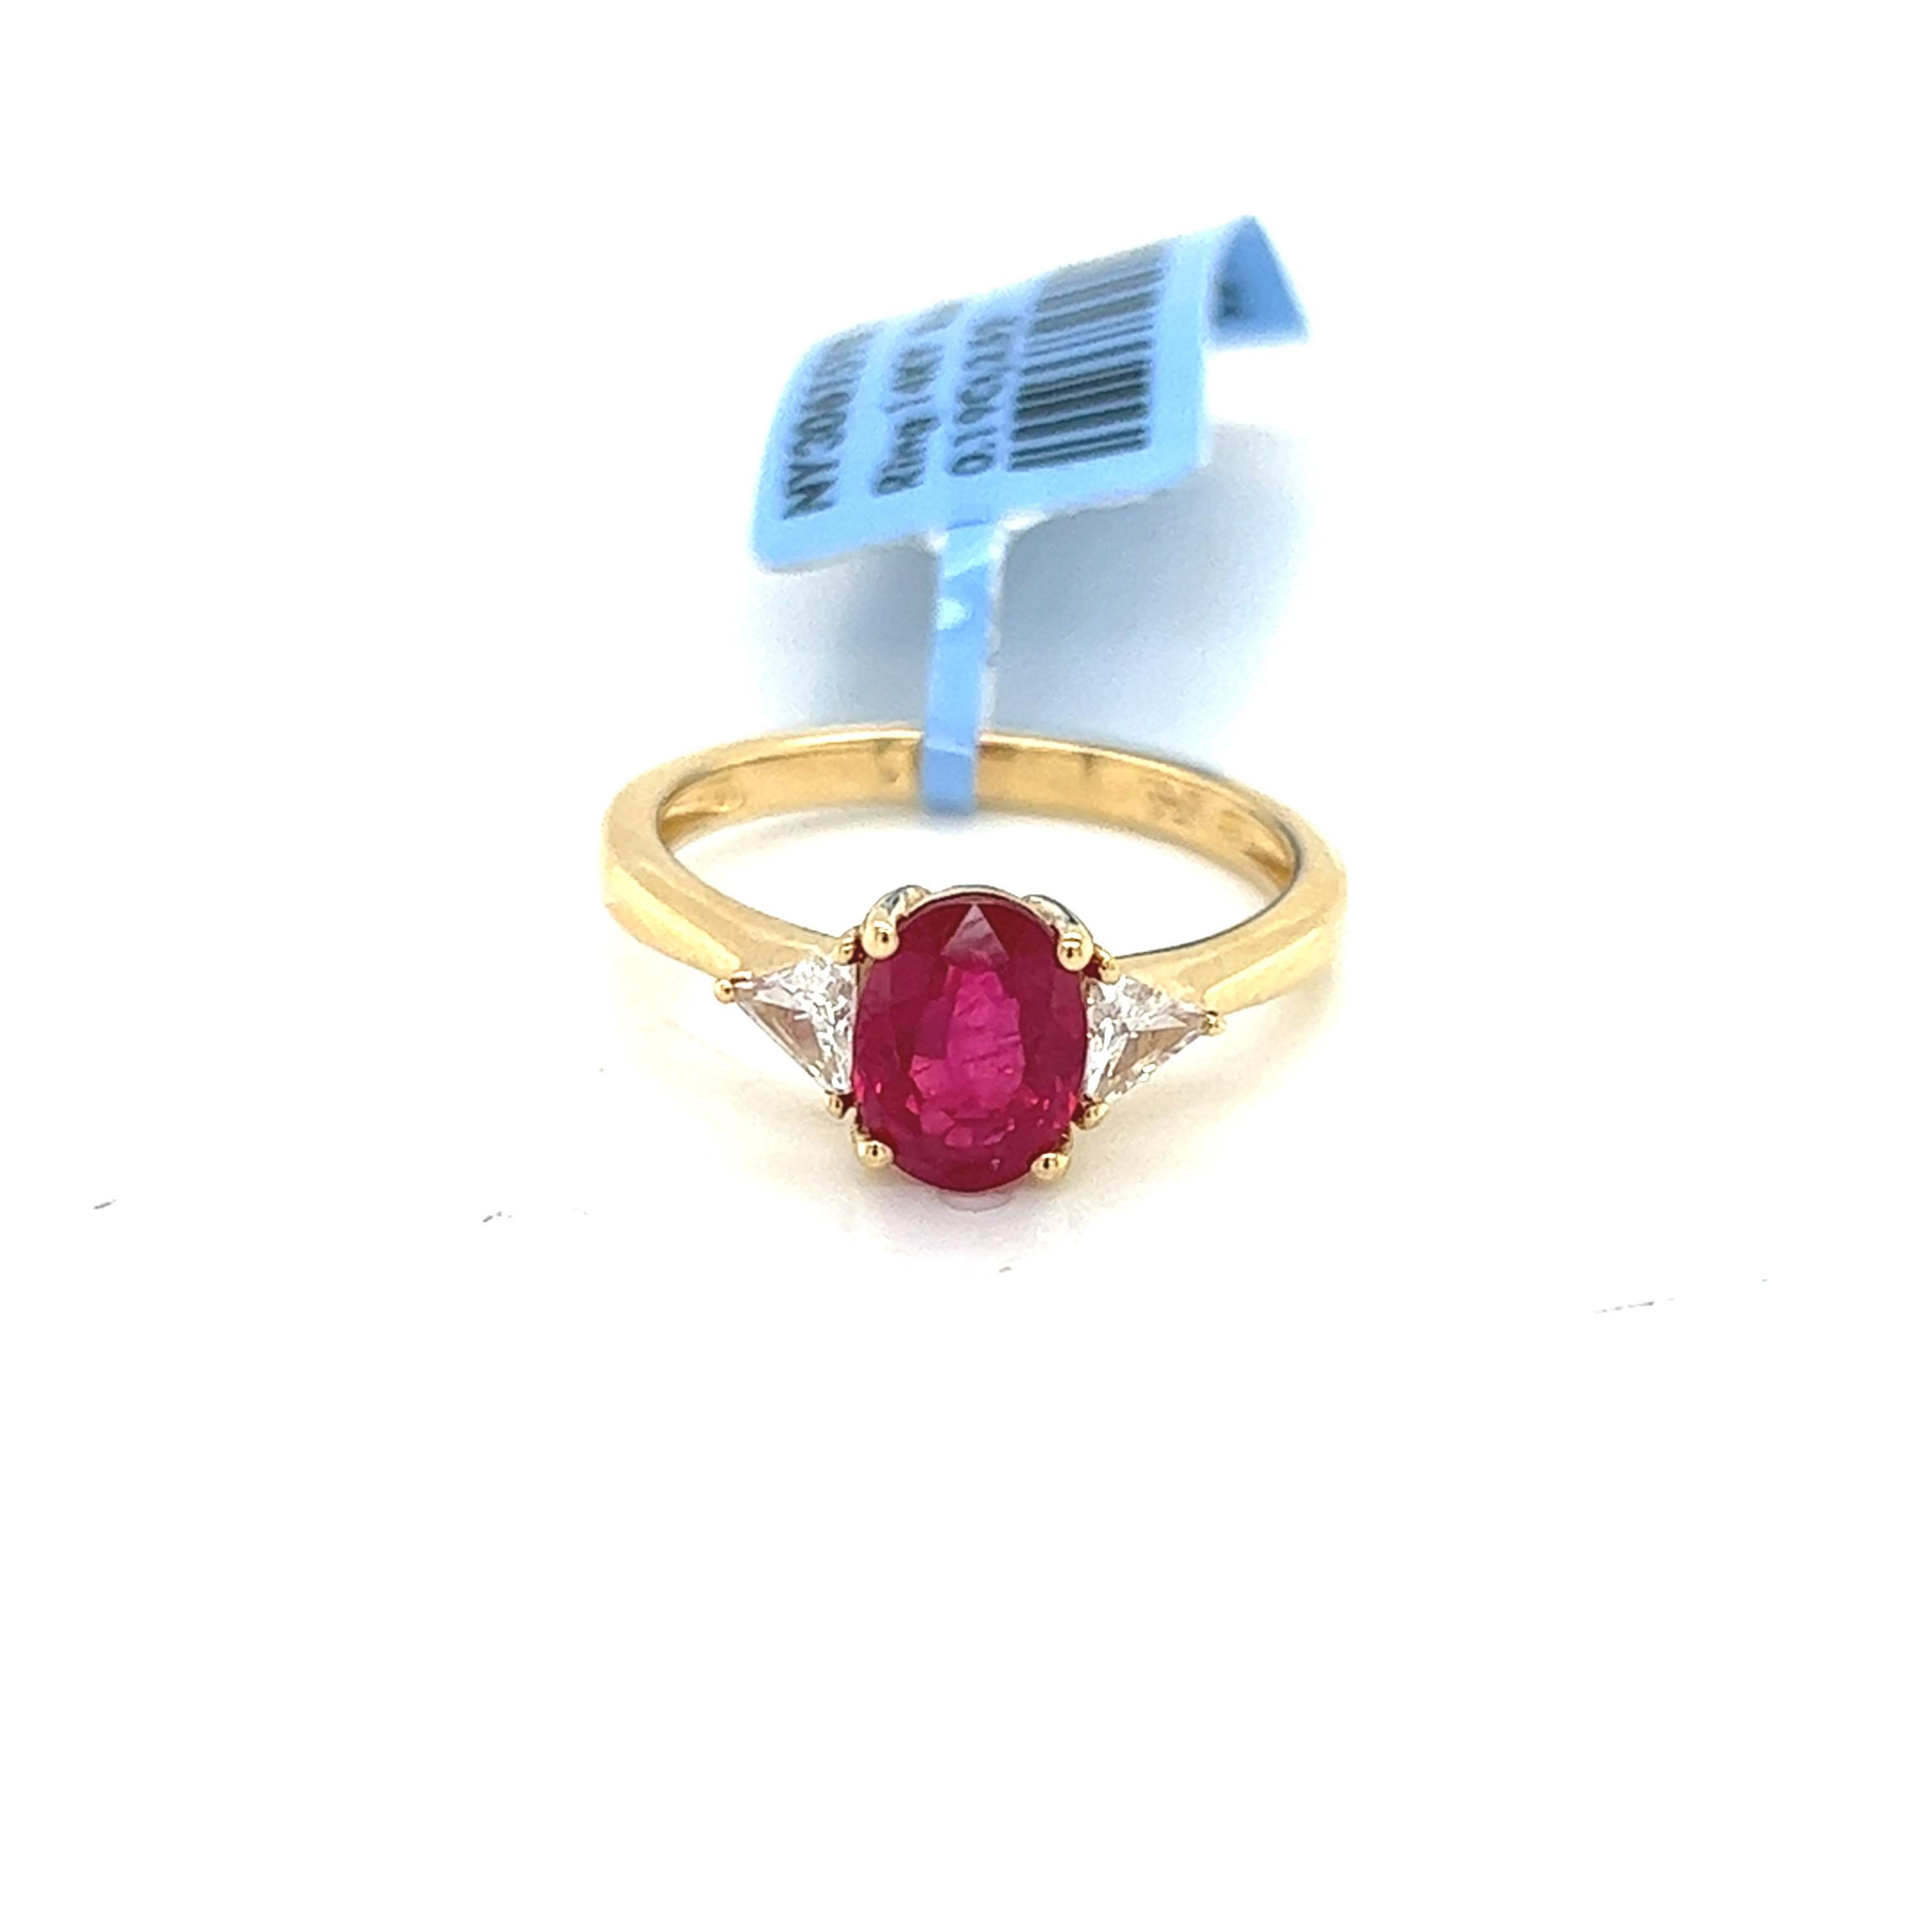 Unser atemberaubender Dreisteinring mit 2,04 Karat Rubin und Diamant ist die perfekte Kombination aus Eleganz und Raffinesse. Dieser exquisite Ring besteht aus einem natürlichen Rubin von 2,04 Karat, der von außergewöhnlicher Qualität und Farbe ist,